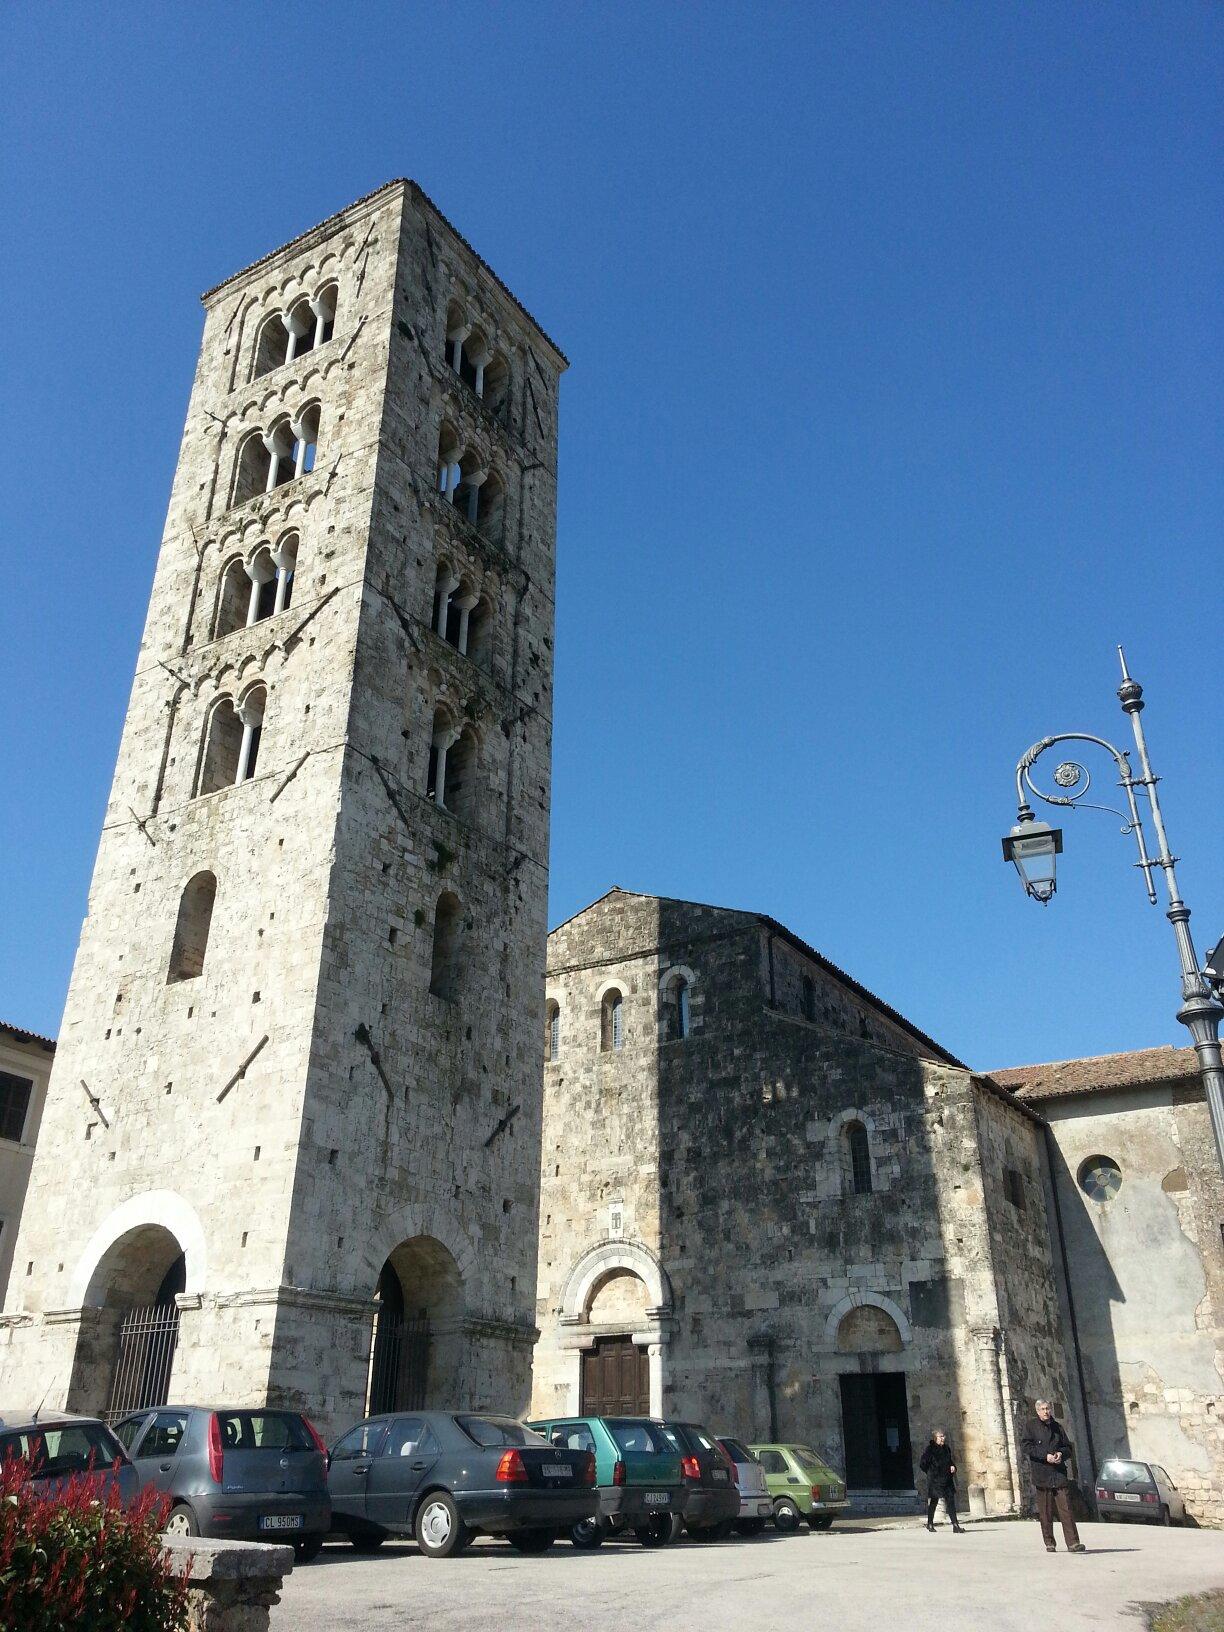 Cattedrale di Santa Maria - sec. XI-XII